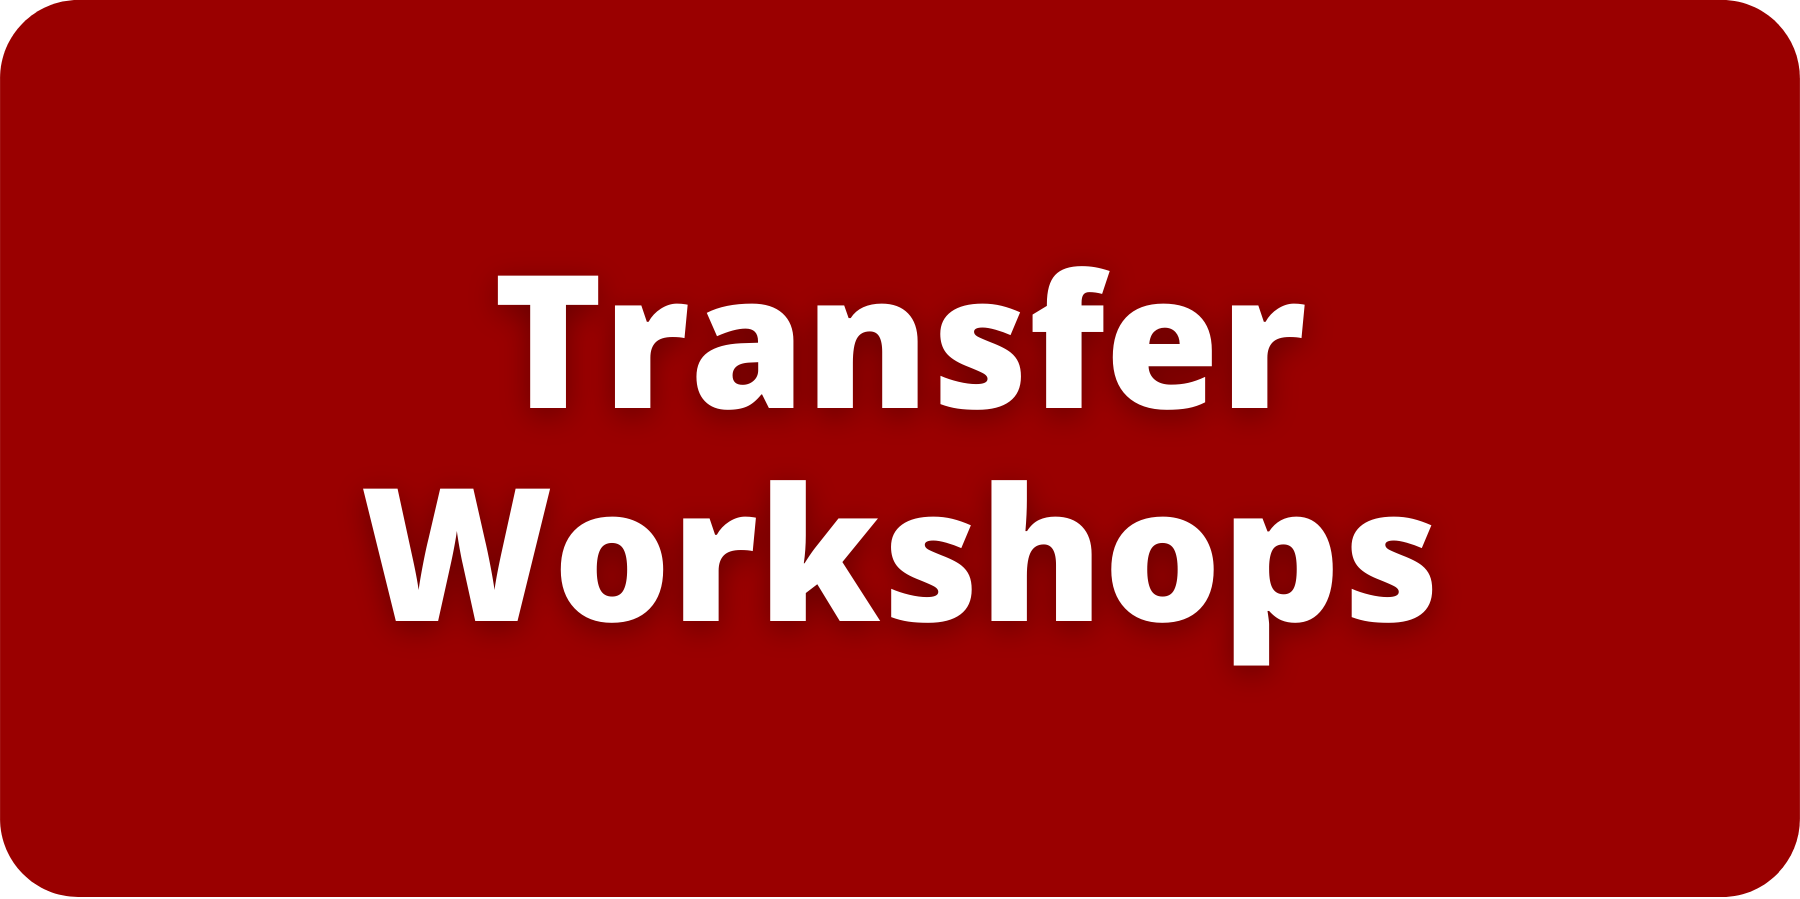 Transfer Workshops.png